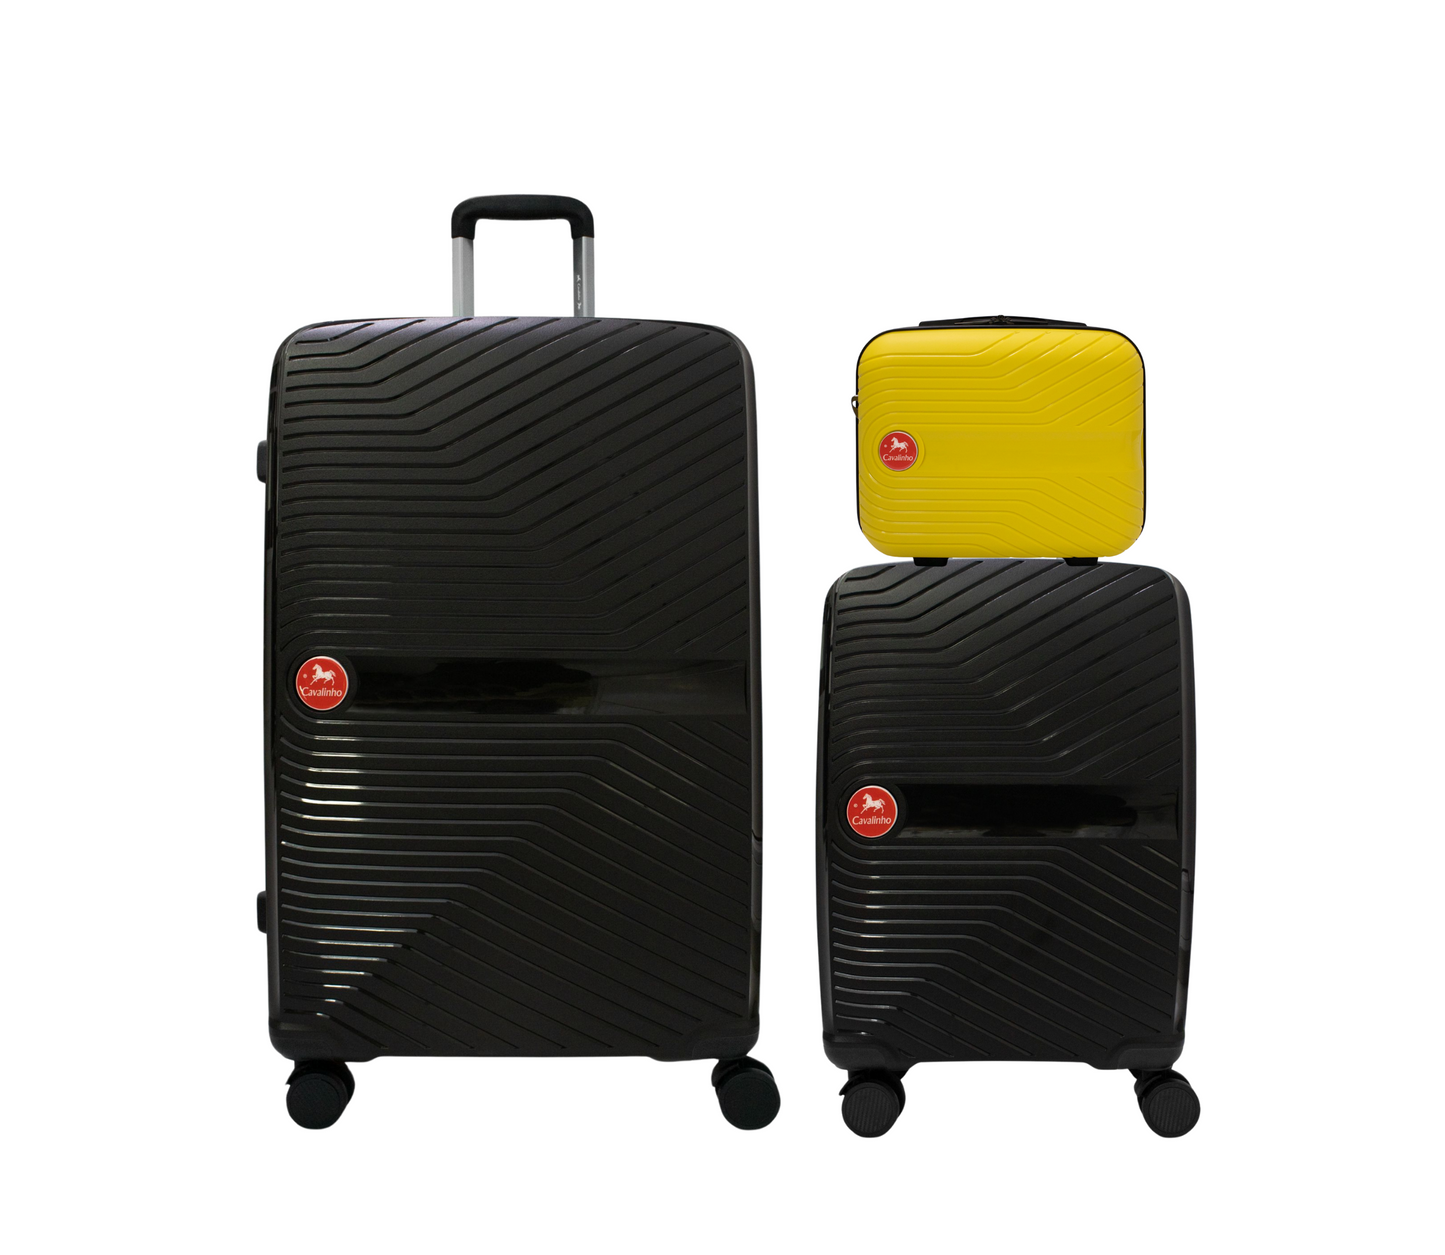 #color_ Yellow Black Black | Cavalinho Canada & USA Colorful 3 Piece Luggage Set (15", 19" & 28") - Yellow Black Black - 68020004.080101.S151928._1